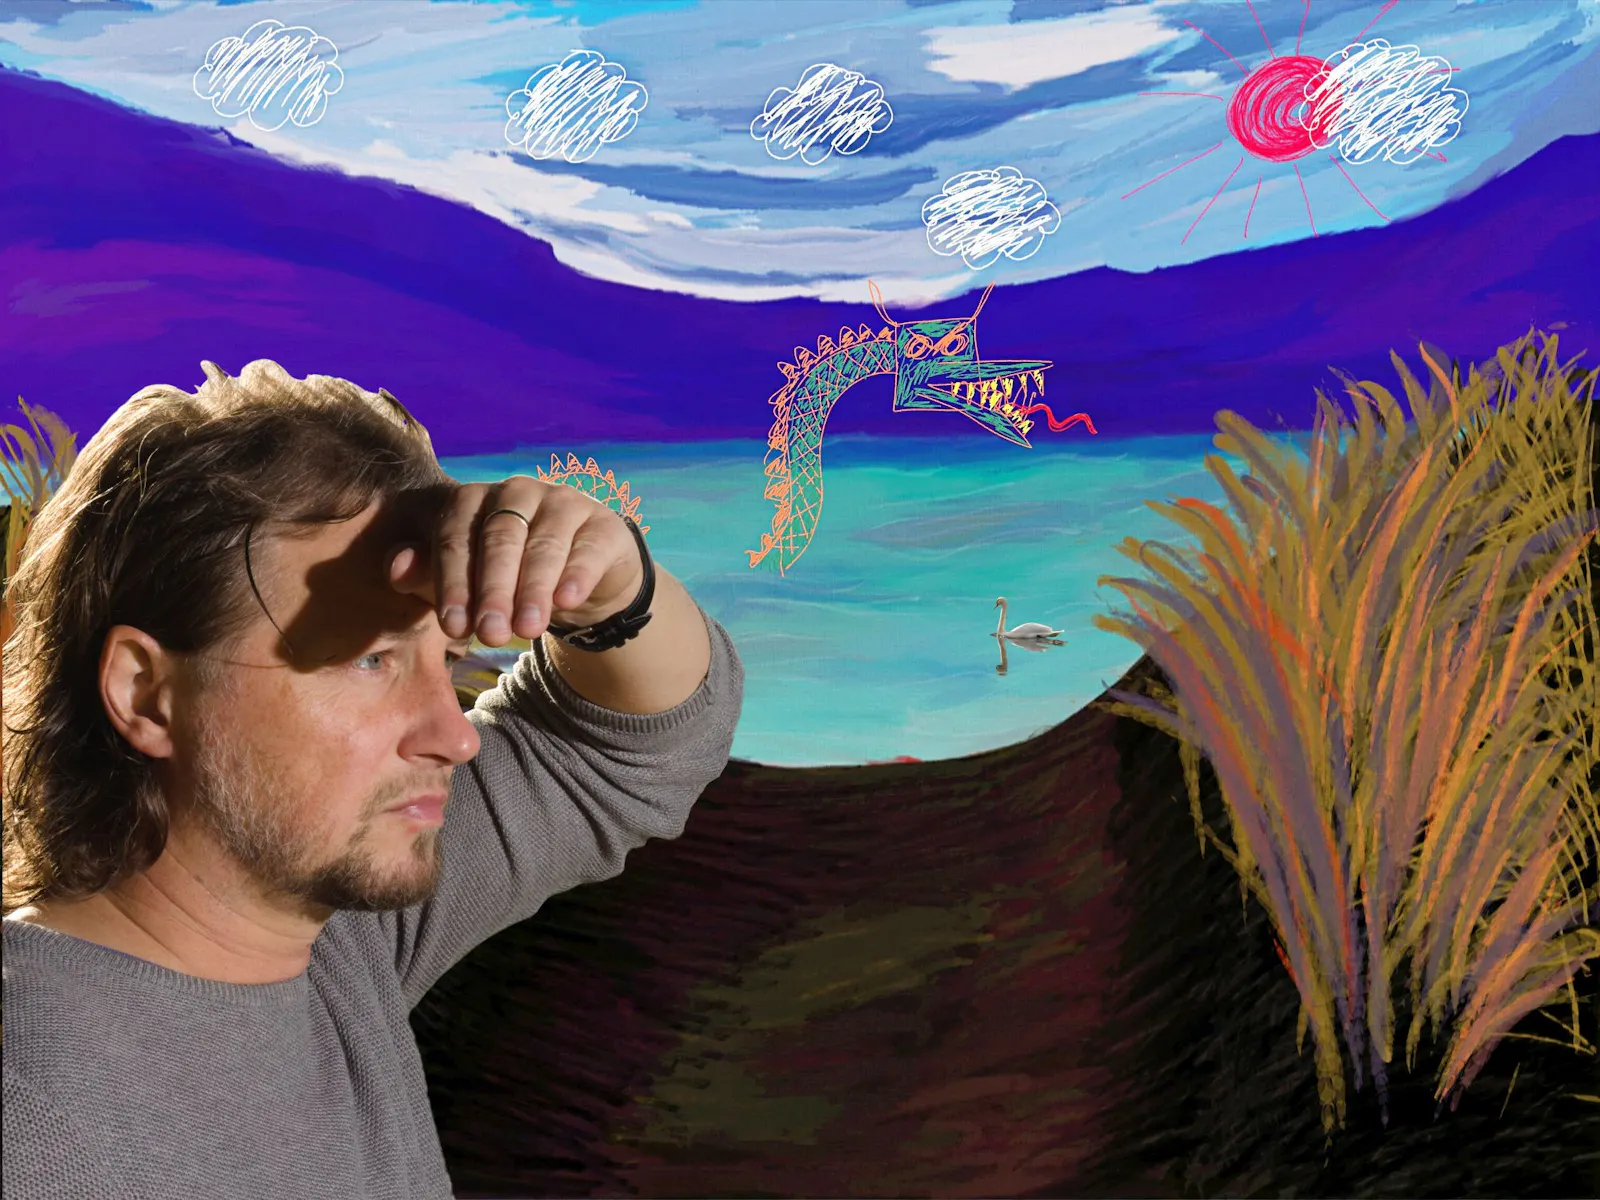 Das Gemälde einer Landschaft mit einem See und einer großen Seeschlange. Im Vordergrund eine Fotografie von Gofi, der in die Ferne schaut.